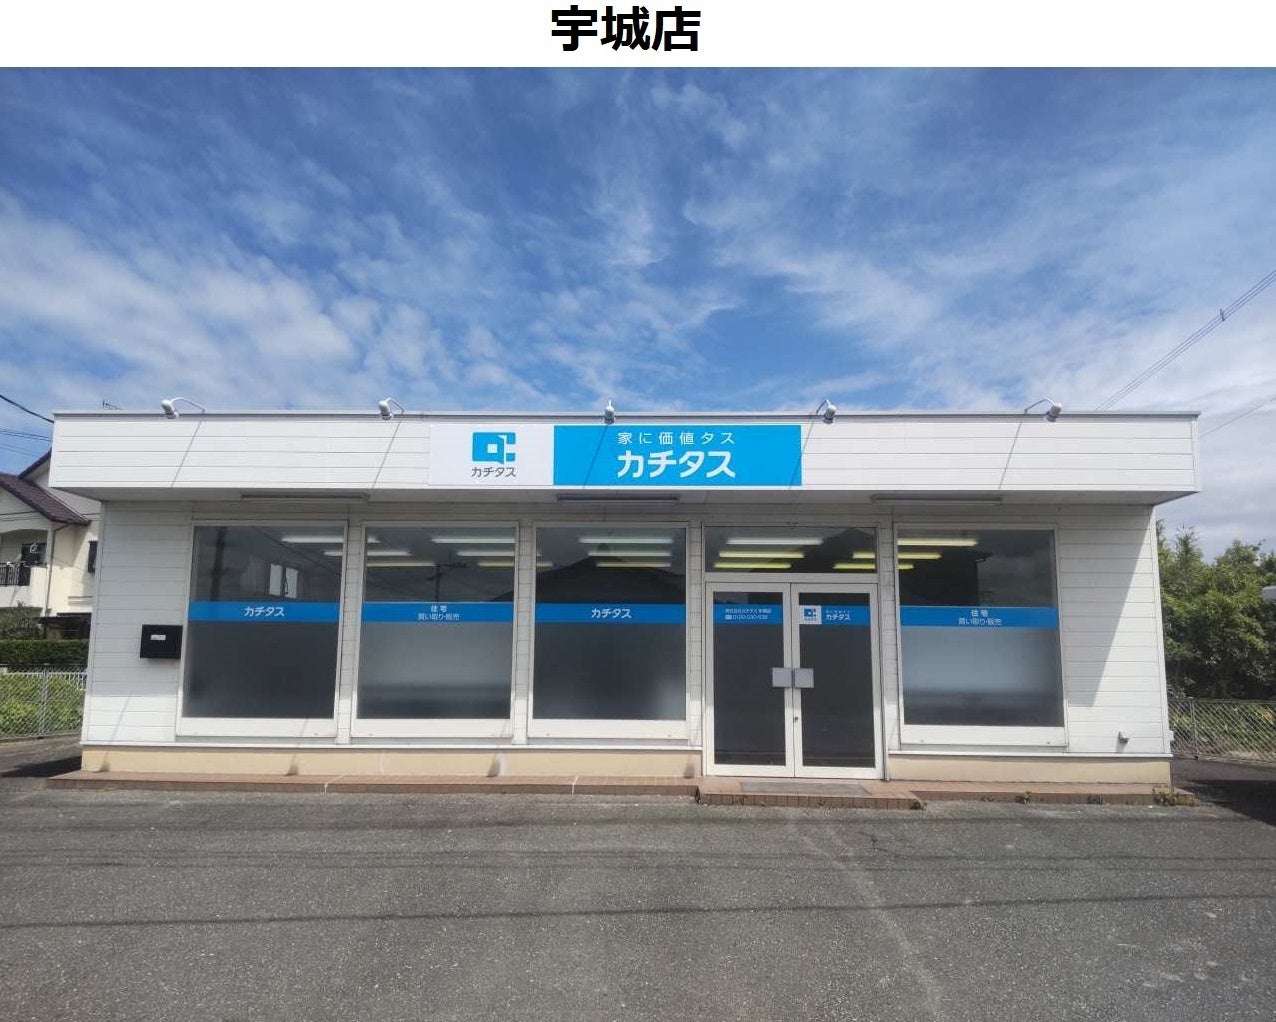 中古住宅買取再生業界No1*¹のカチタスが、熊本県内で最も空き家率の高い*²エリアを管轄する「宇城店」オープンのサブ画像1